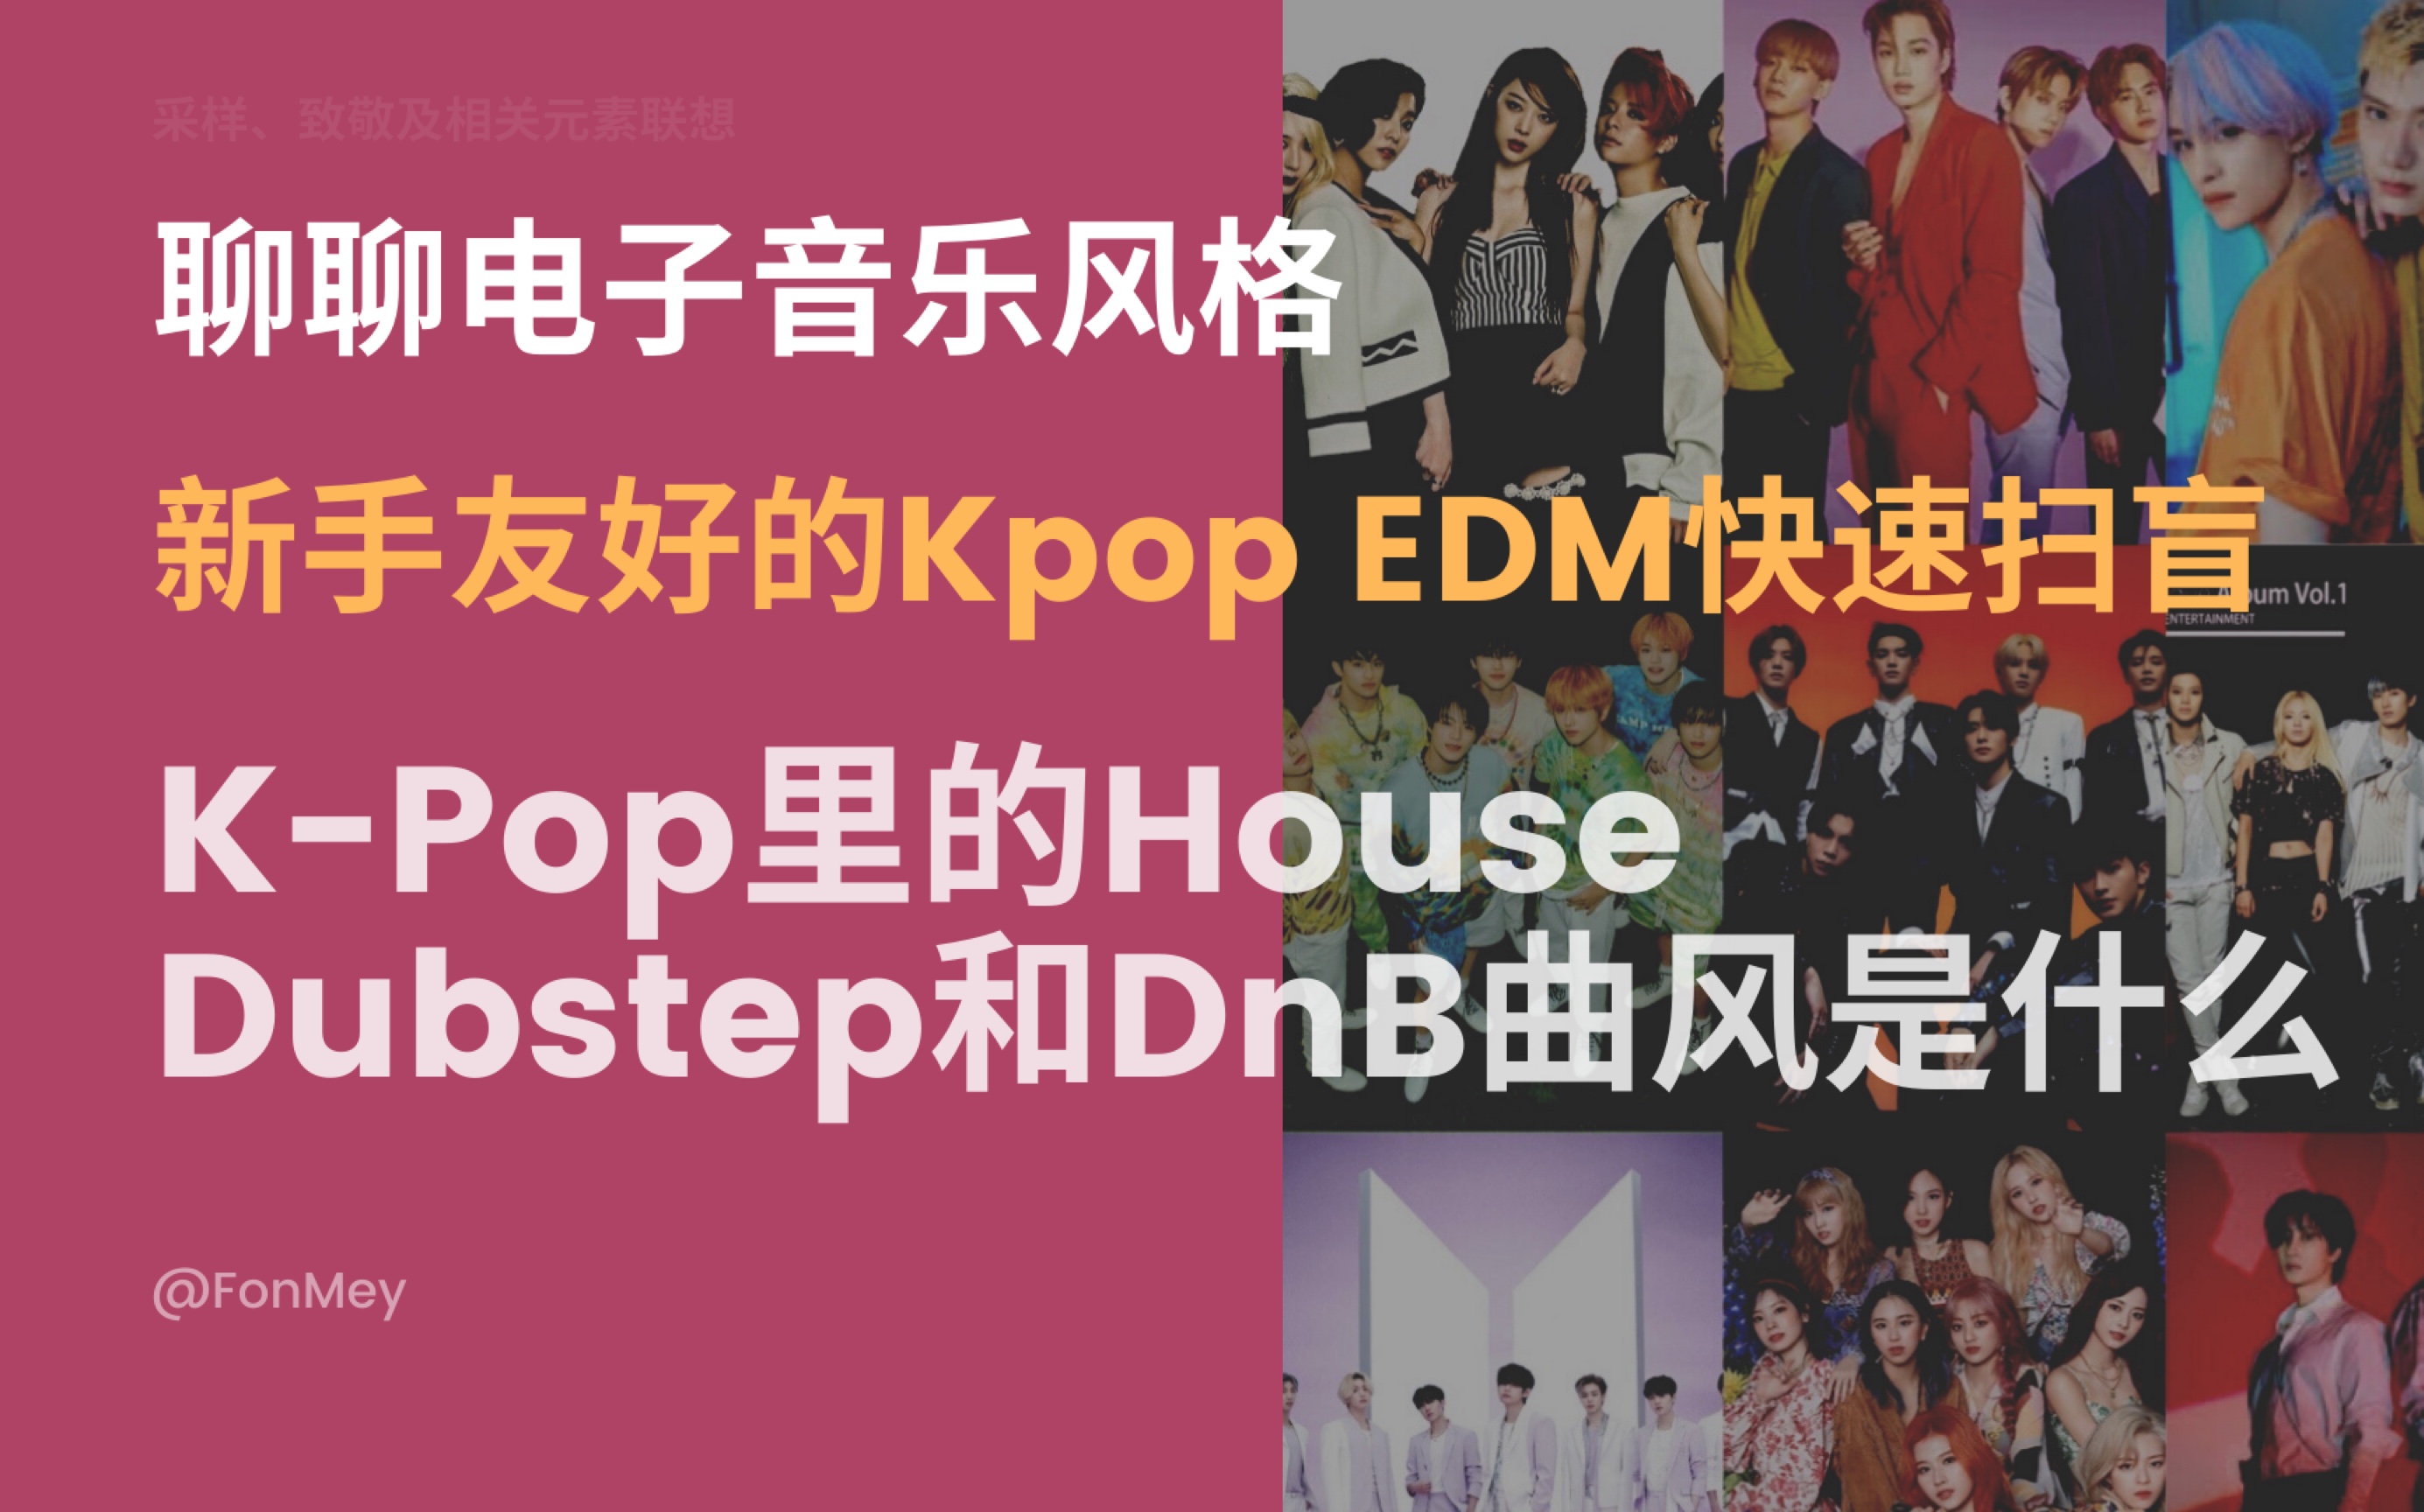 来聊聊K-Pop的EDM曲风：House、Dubstep和Drum ‘n Bass